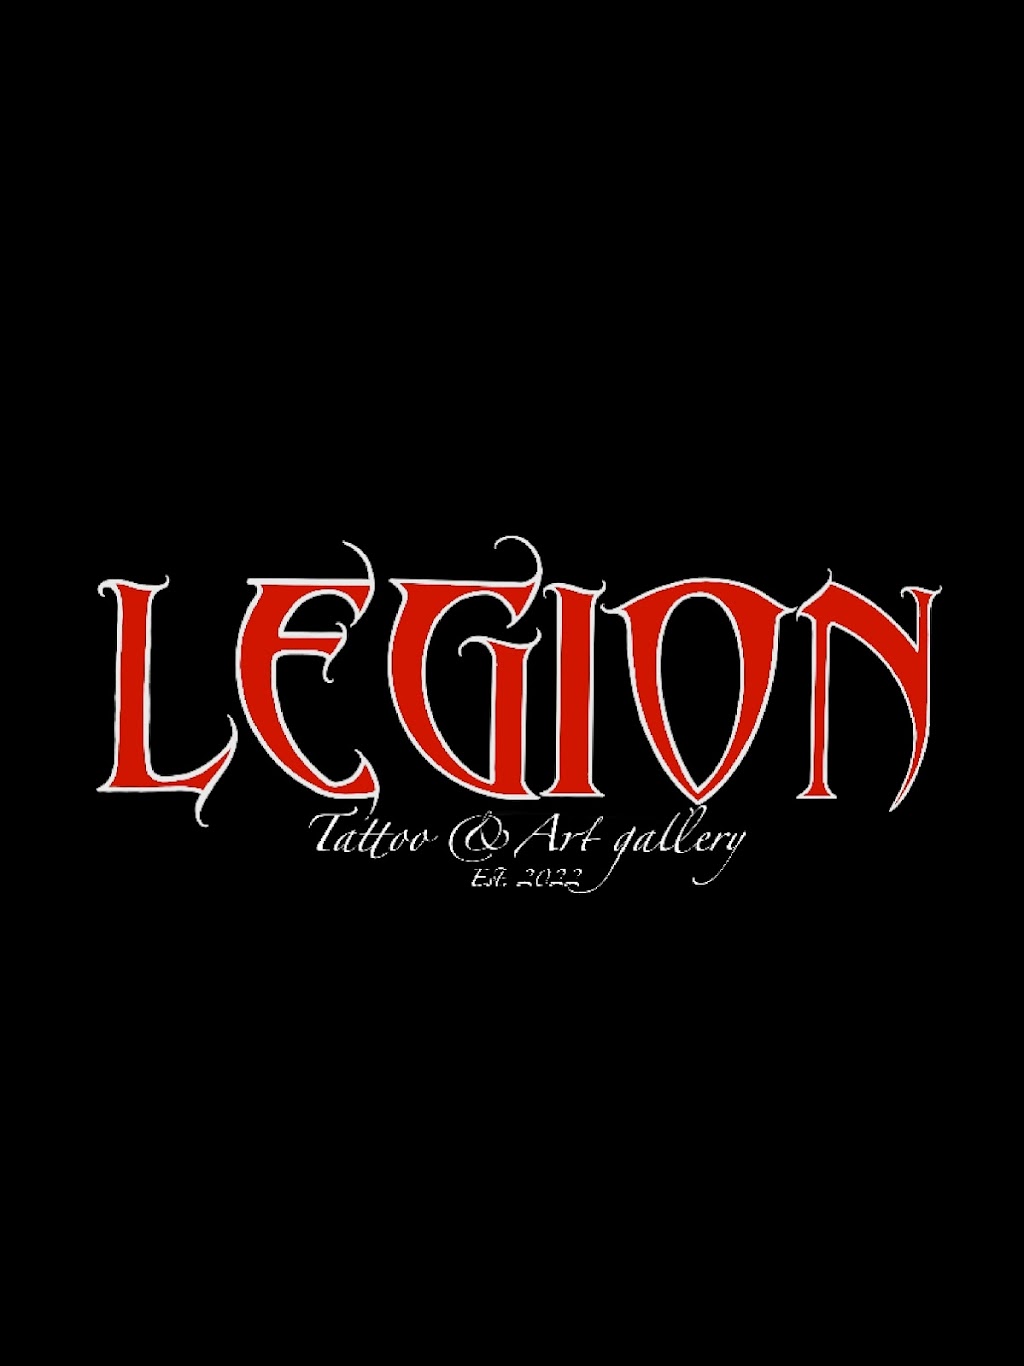 Legion Tattoo & Art Gallery | 286 US-206 Suite 112, Flanders, NJ 07836 | Phone: (973) 668-5906